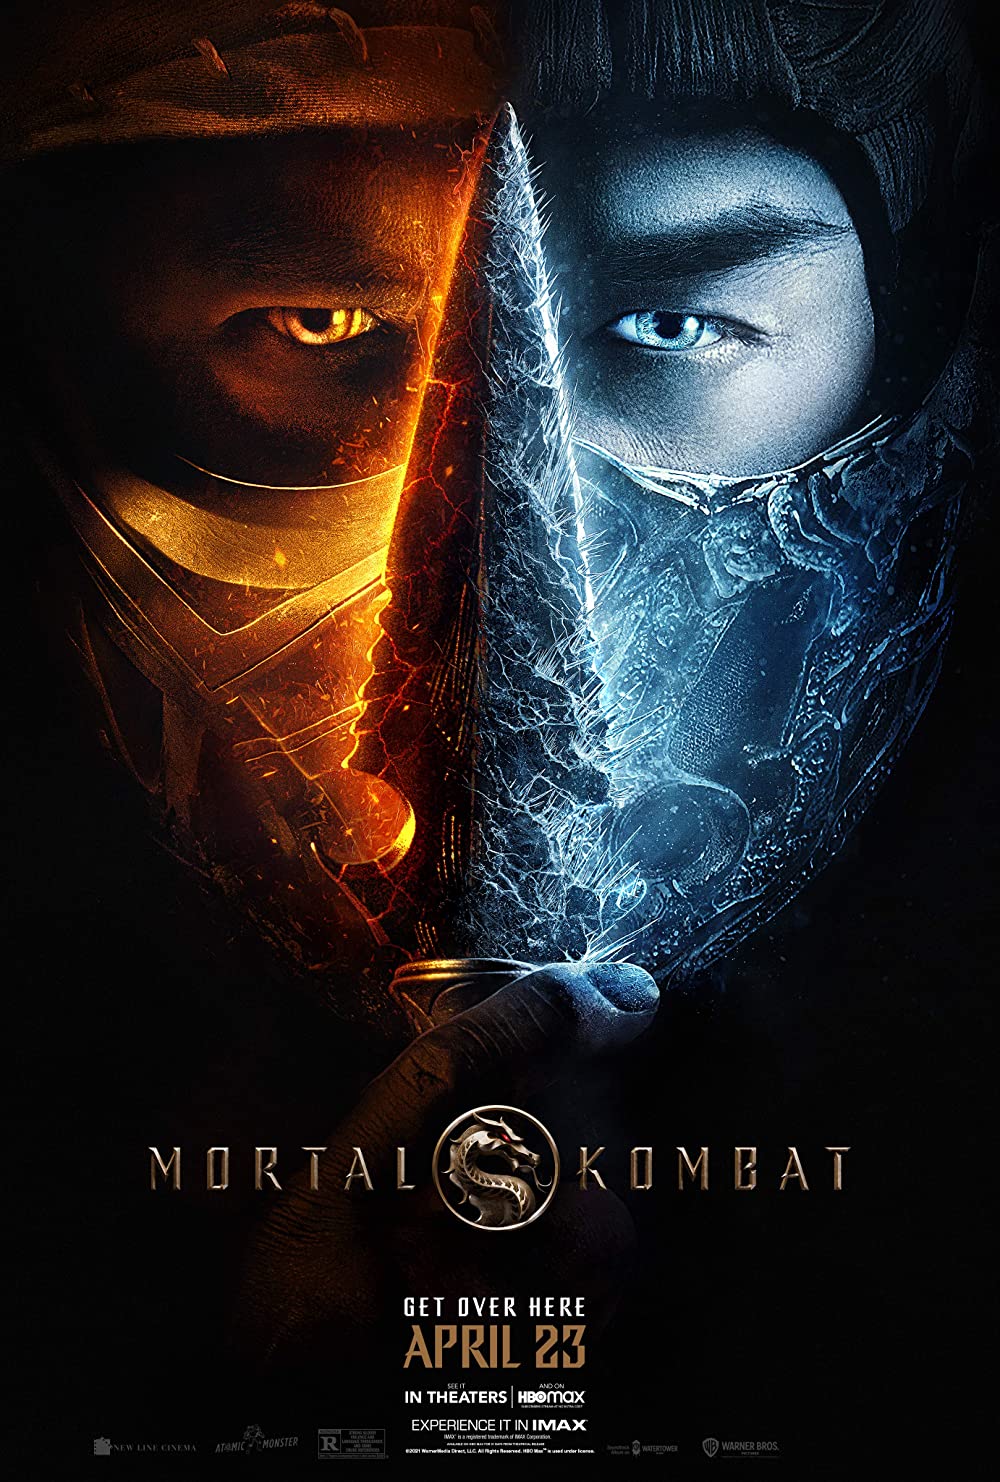 Filmbeschreibung zu Mortal Kombat 3D